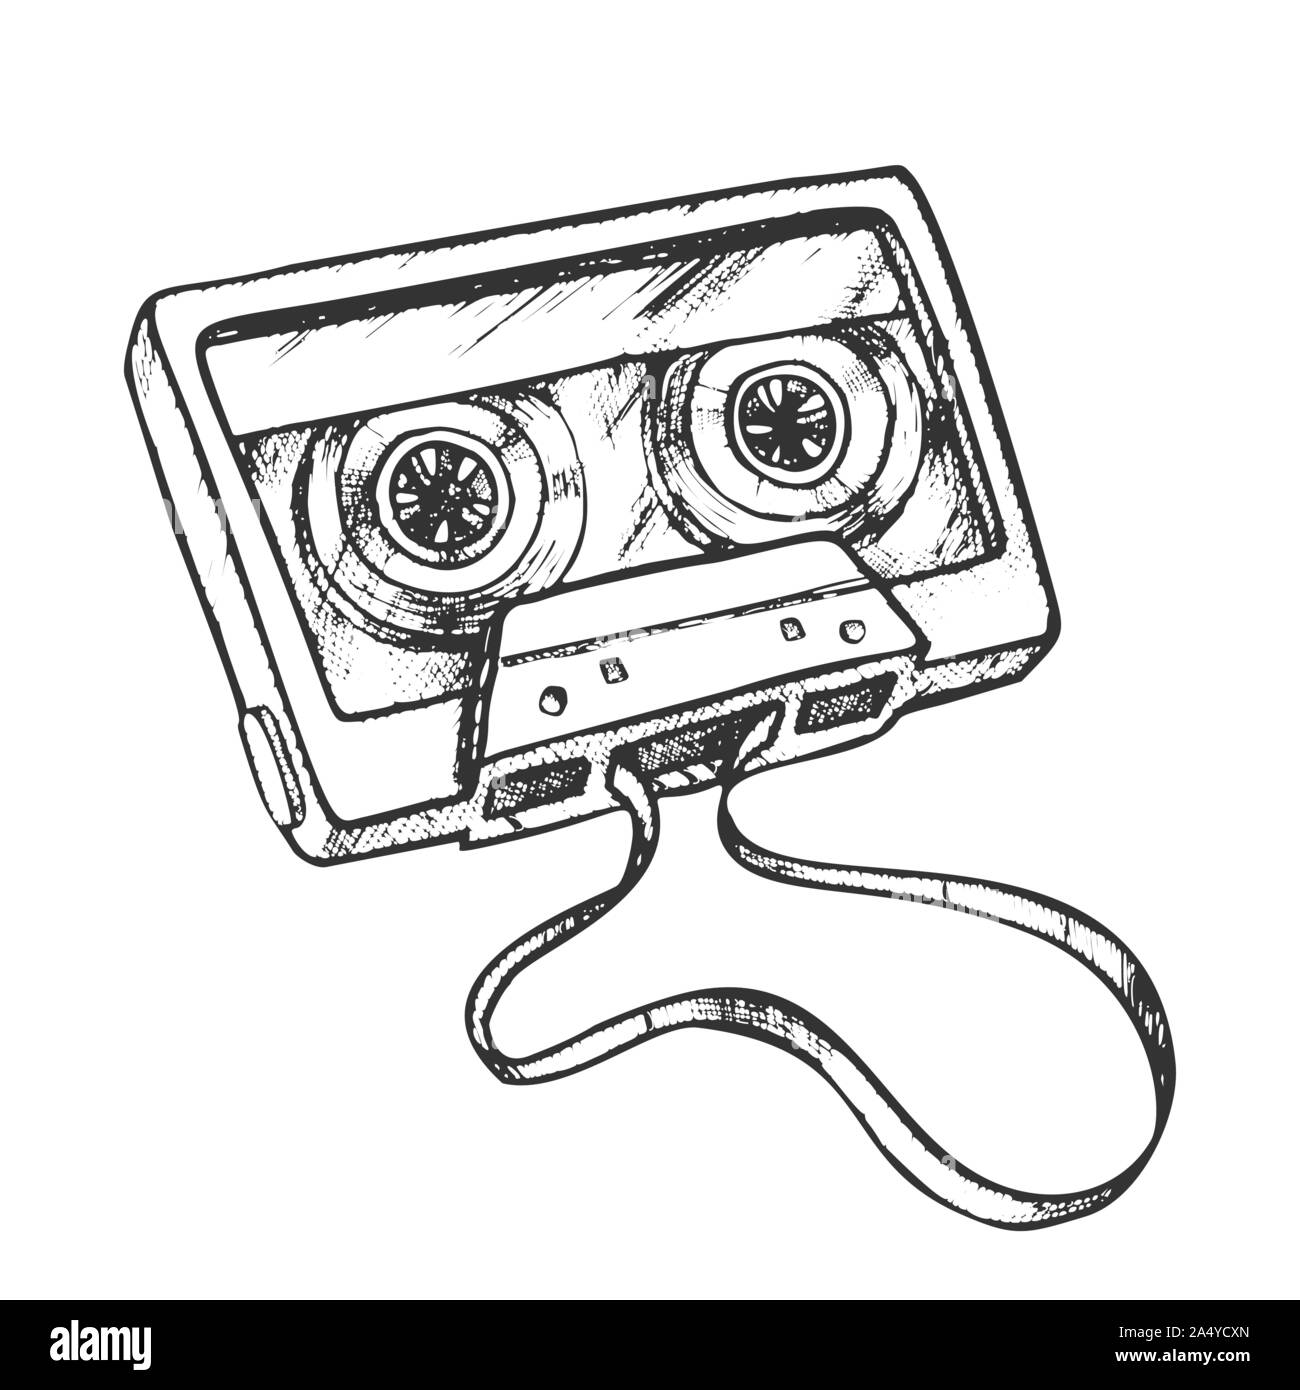 Cassette Tape For Listening Music Retro Vector Stock Vector Image & Art ...